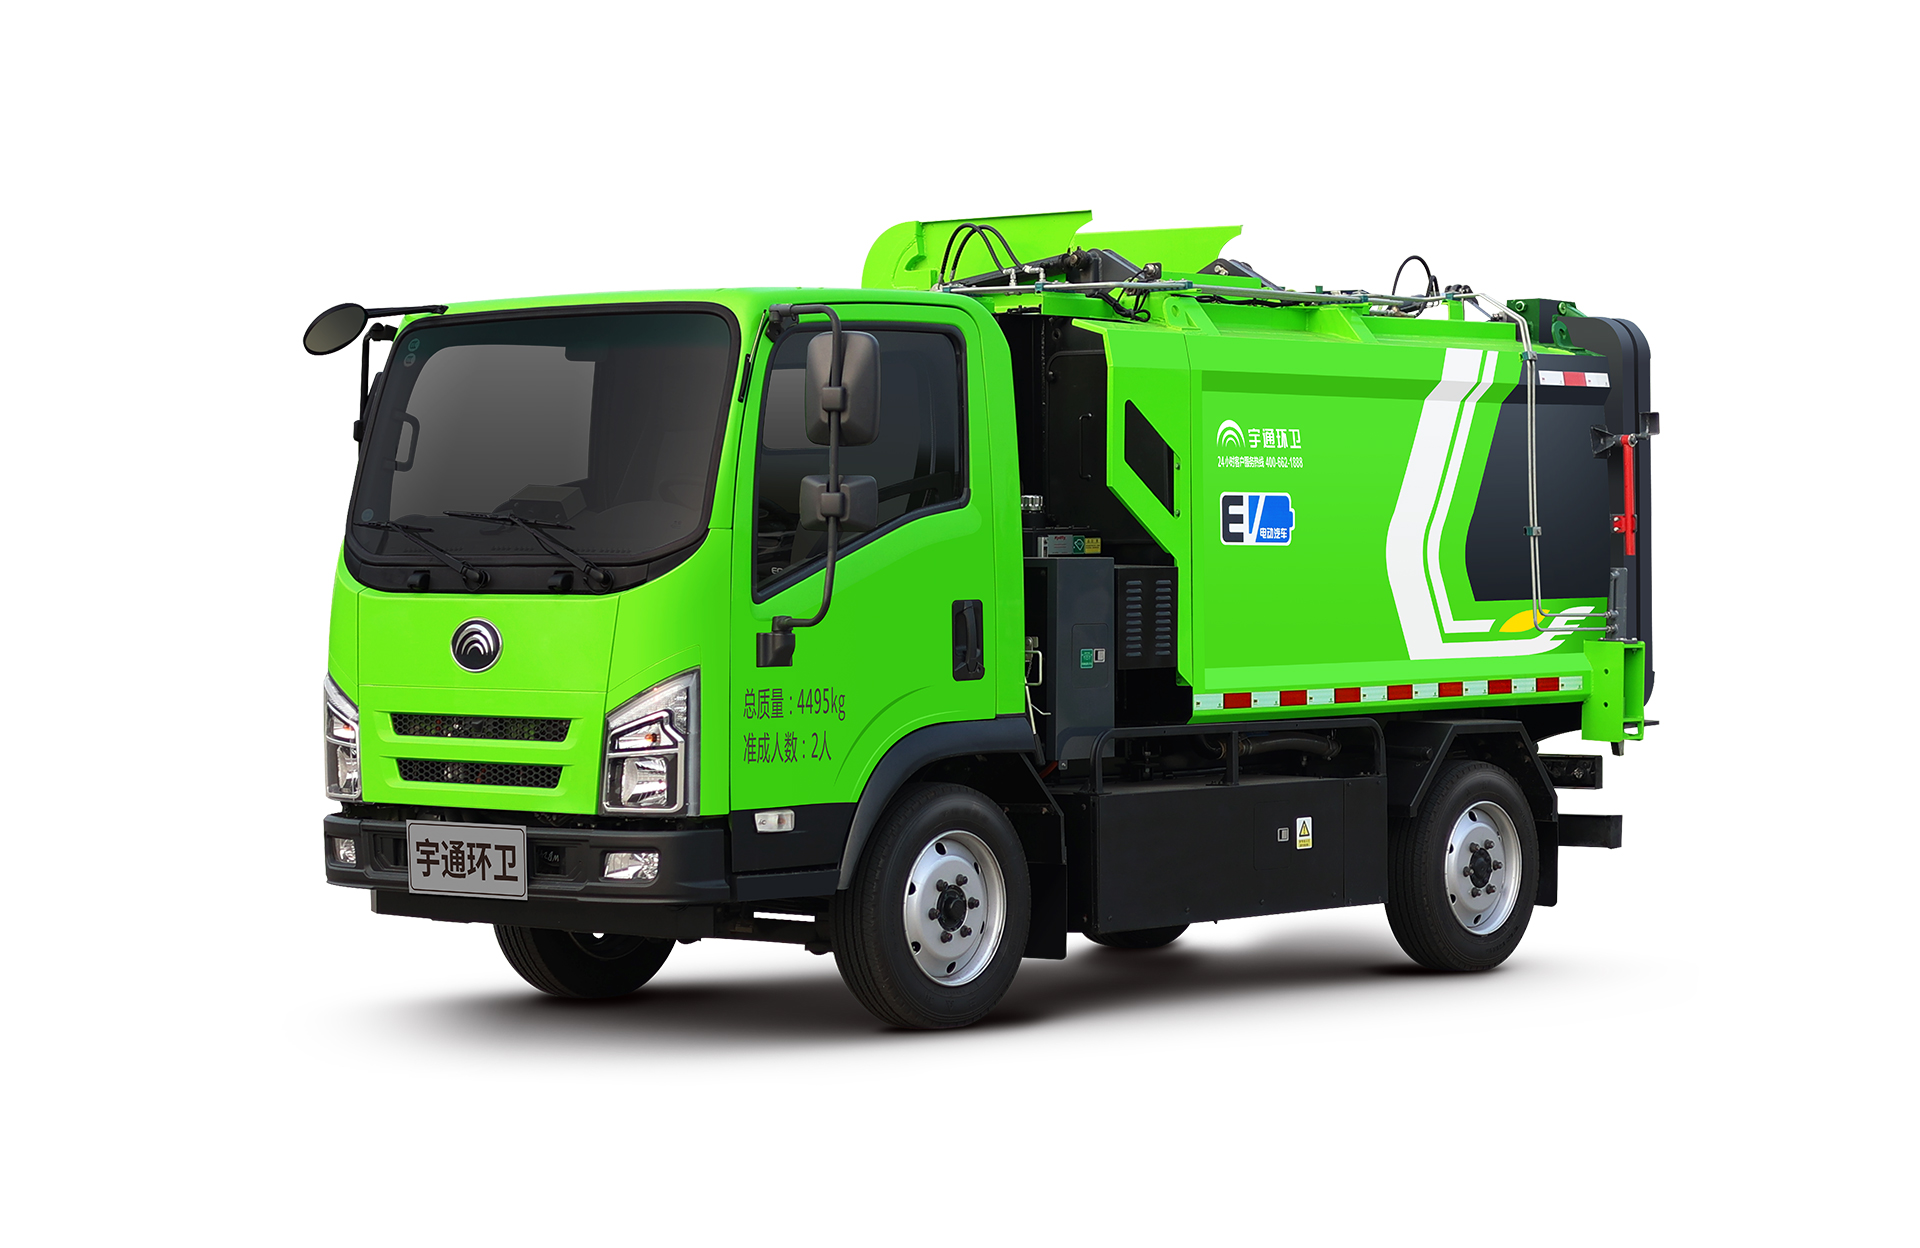 4t纯电动自装卸式垃圾车 宇通环卫自装卸式垃圾车主要具备小巧灵活、密封性、装载能力强等主要特点。